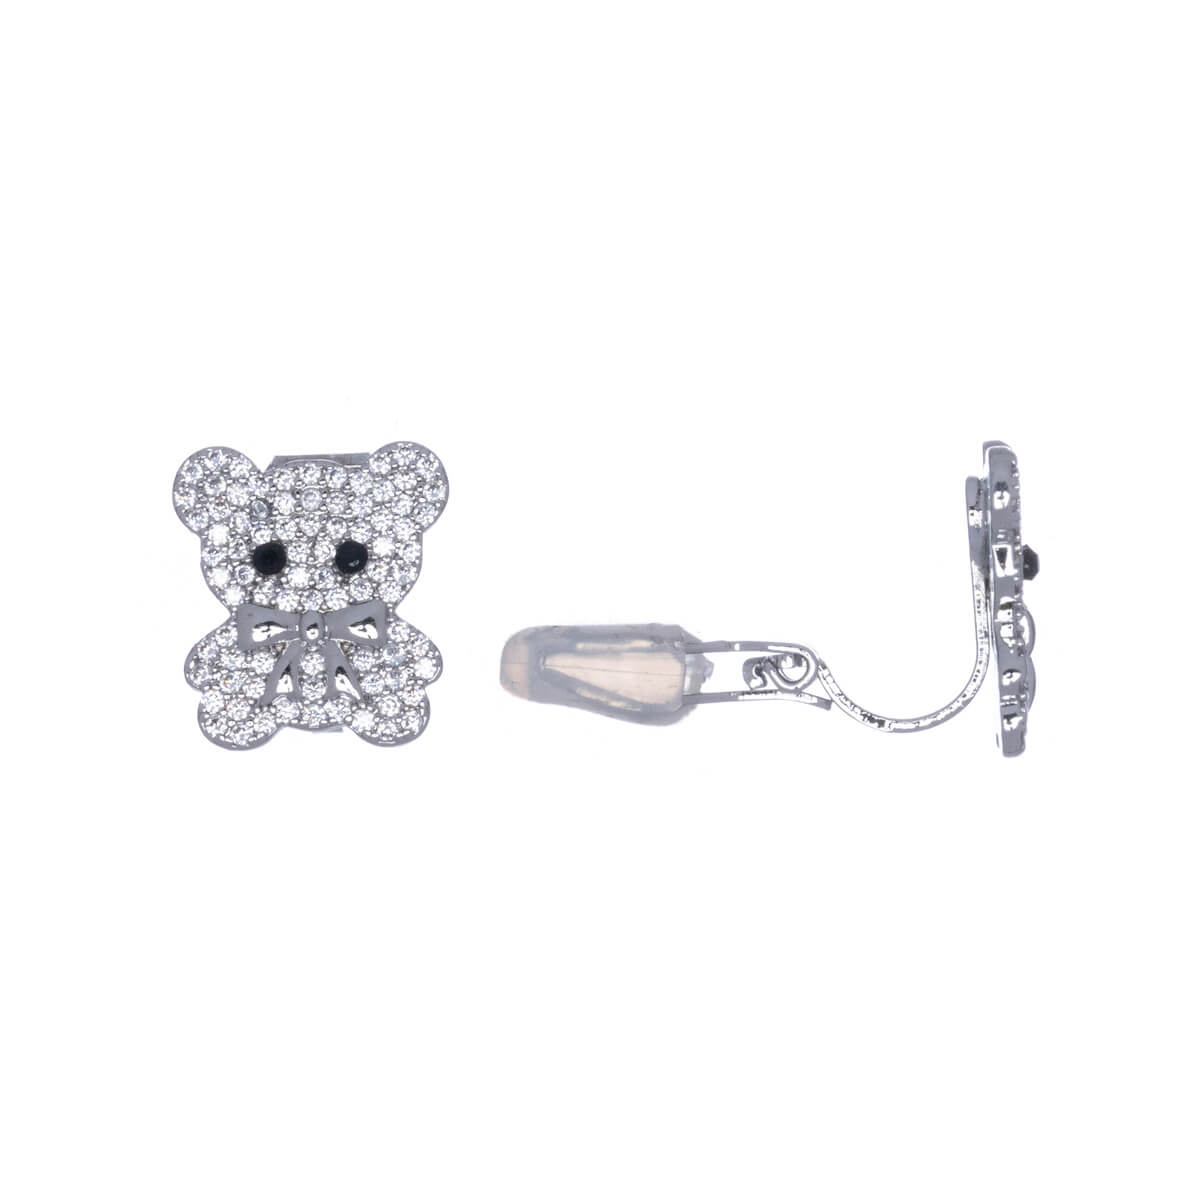 Zirconia teddy bear clip earrings (silver 925)